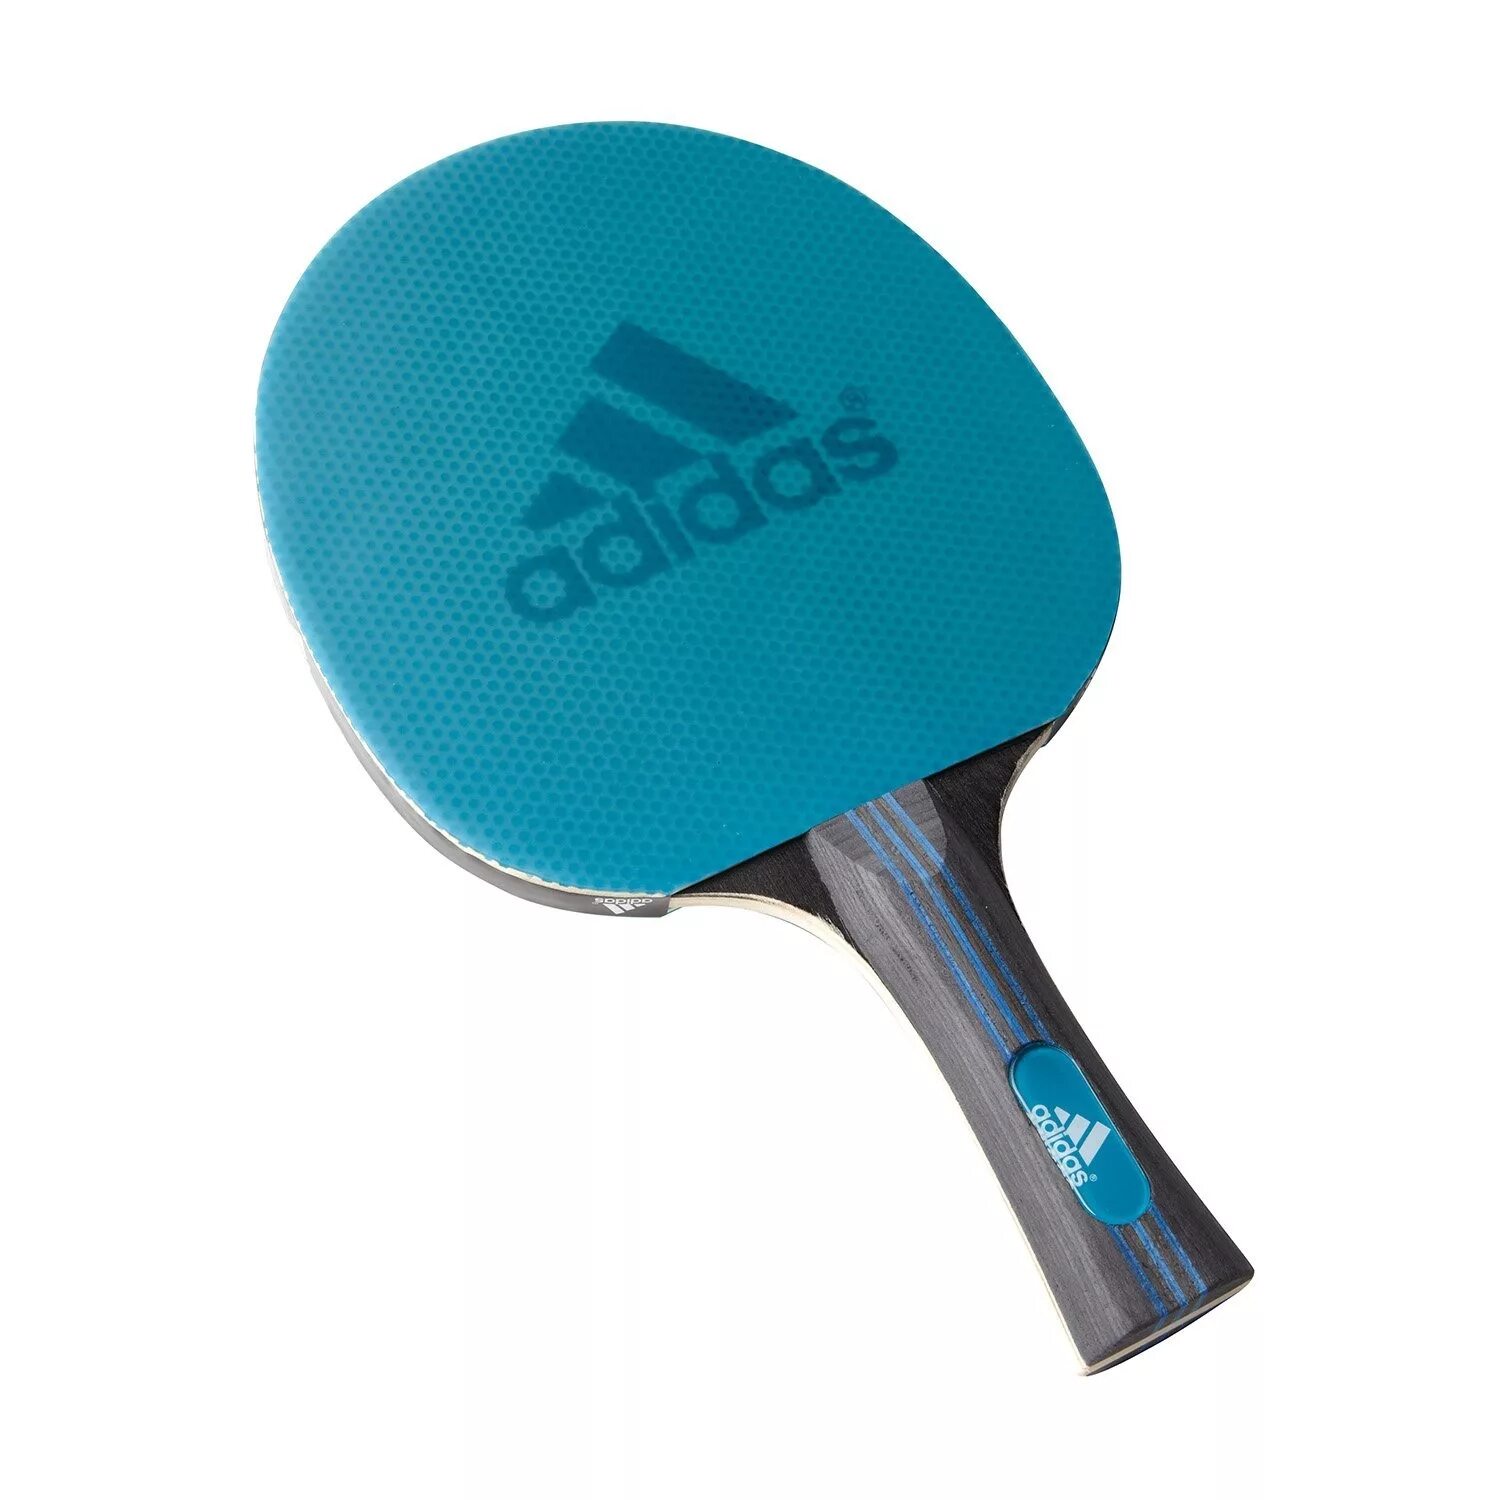 Adidas Laser ракетка для настольного тенниса. Ракетка адидас для настольного тенниса. Ракетка адидас для настольного тенниса Vigor 120. Ракетка для пинг понга adidas. Настольный теннис какая ракетка лучше